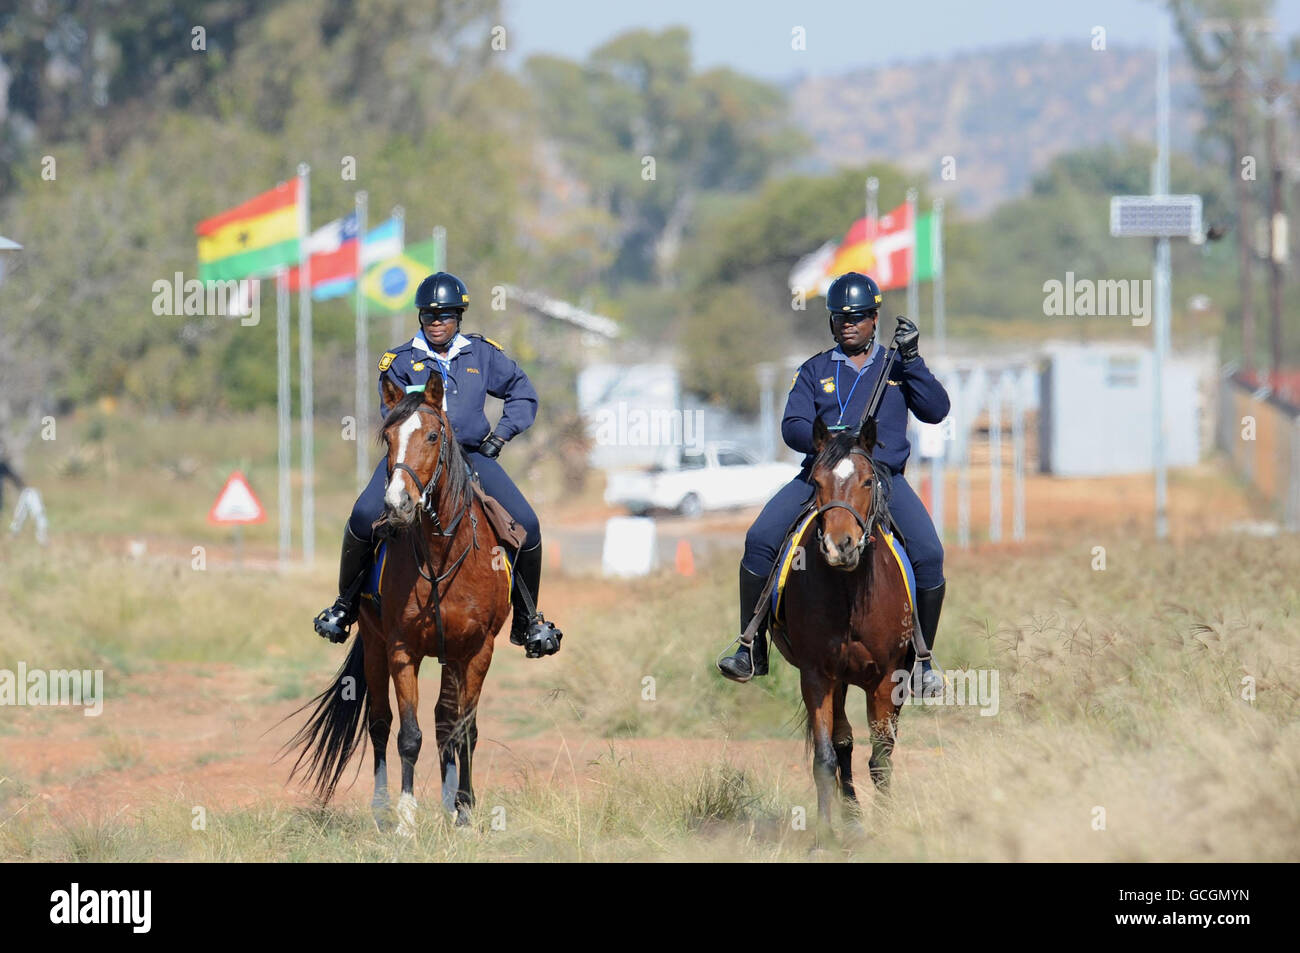 La polizia montata pattuglia il campo di addestramento dell'Inghilterra durante la prima sessione di addestramento dell'Inghilterra al complesso sportivo Royal Bafokeng, Rustenburg, Sud Africa. Foto Stock